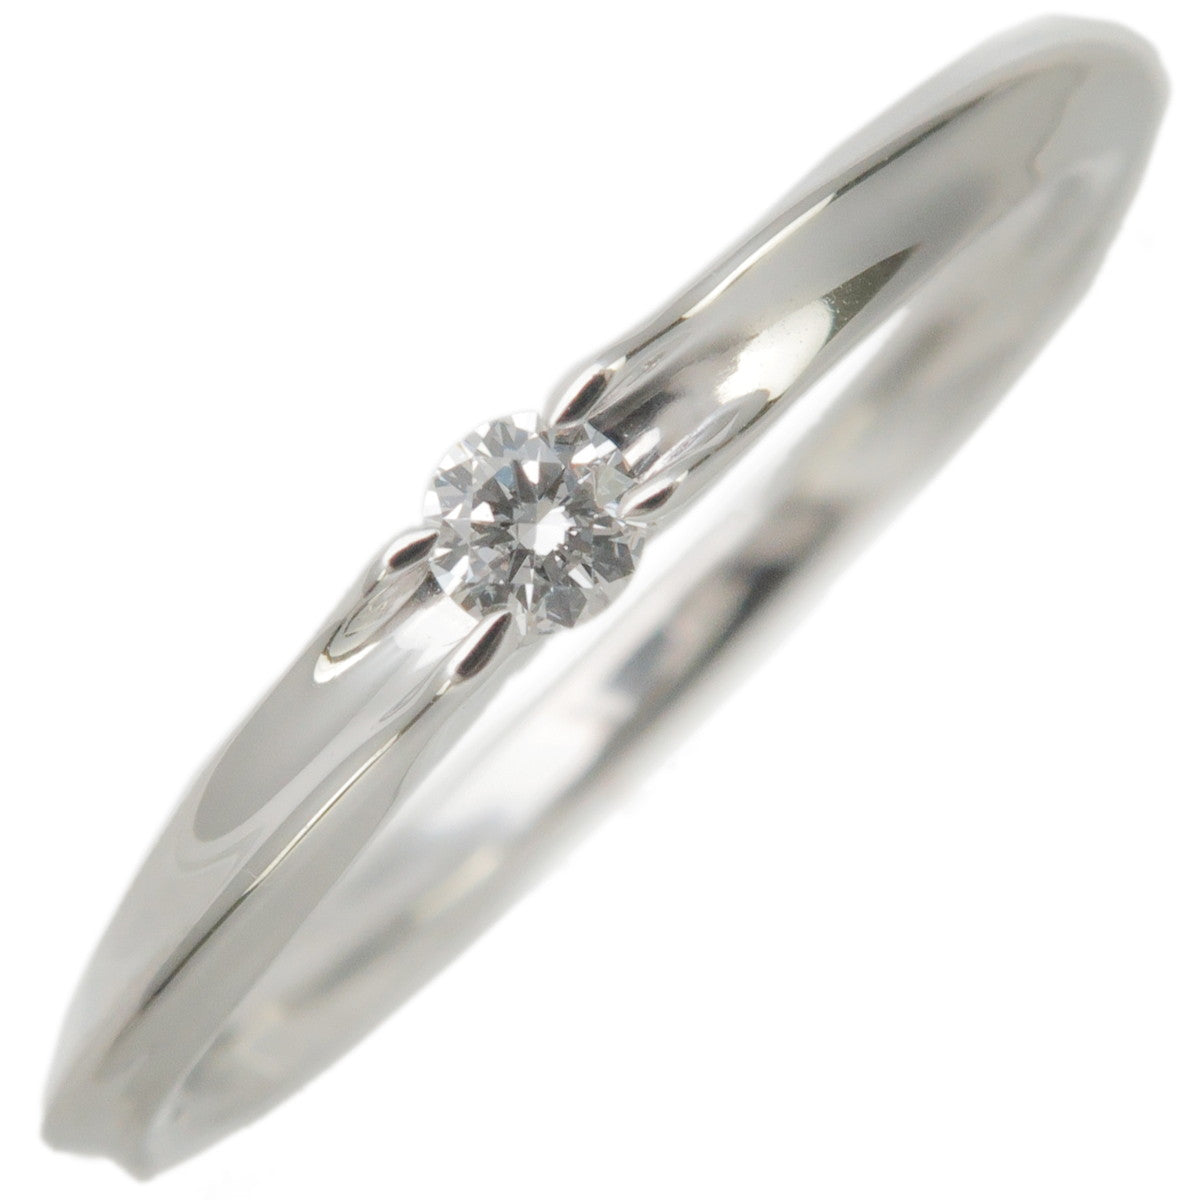 STAR-JEWELRY-1P-Diamond-Ring-0.05ct-K18-750-White-Gold-US5.5-6